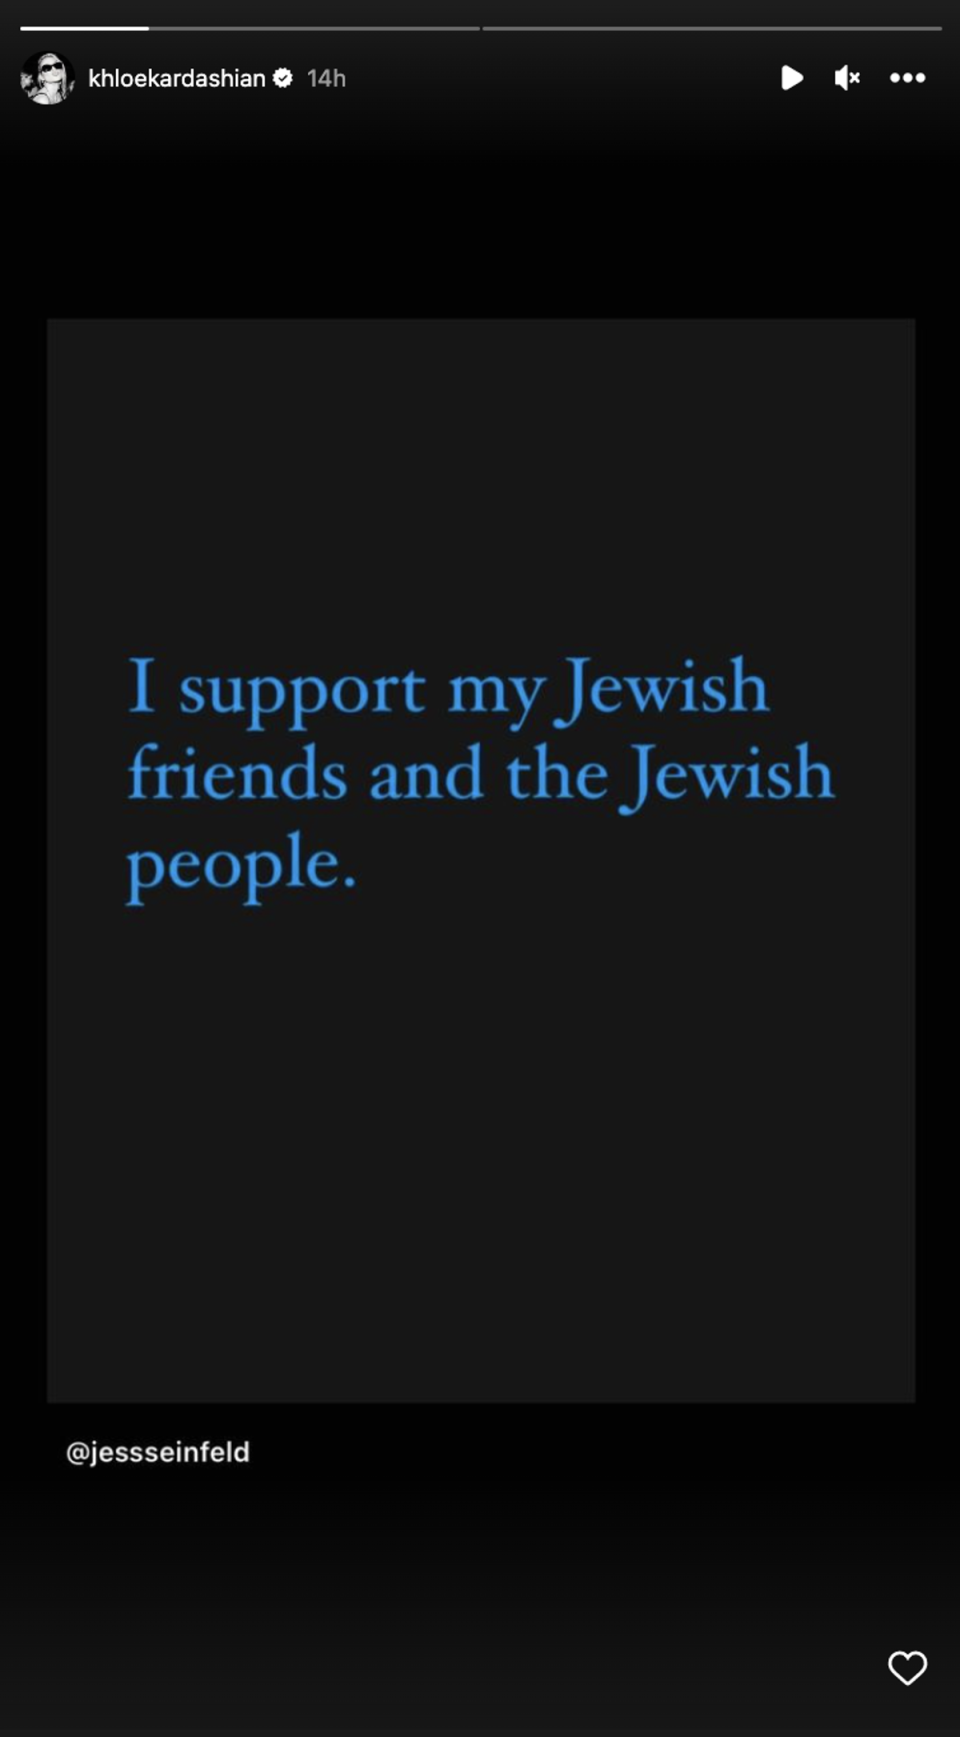 Khloe Kardashian shows support for Jewish community amid Kanye West’s antisemitic comments (Instagram / Khloe Kardashian)